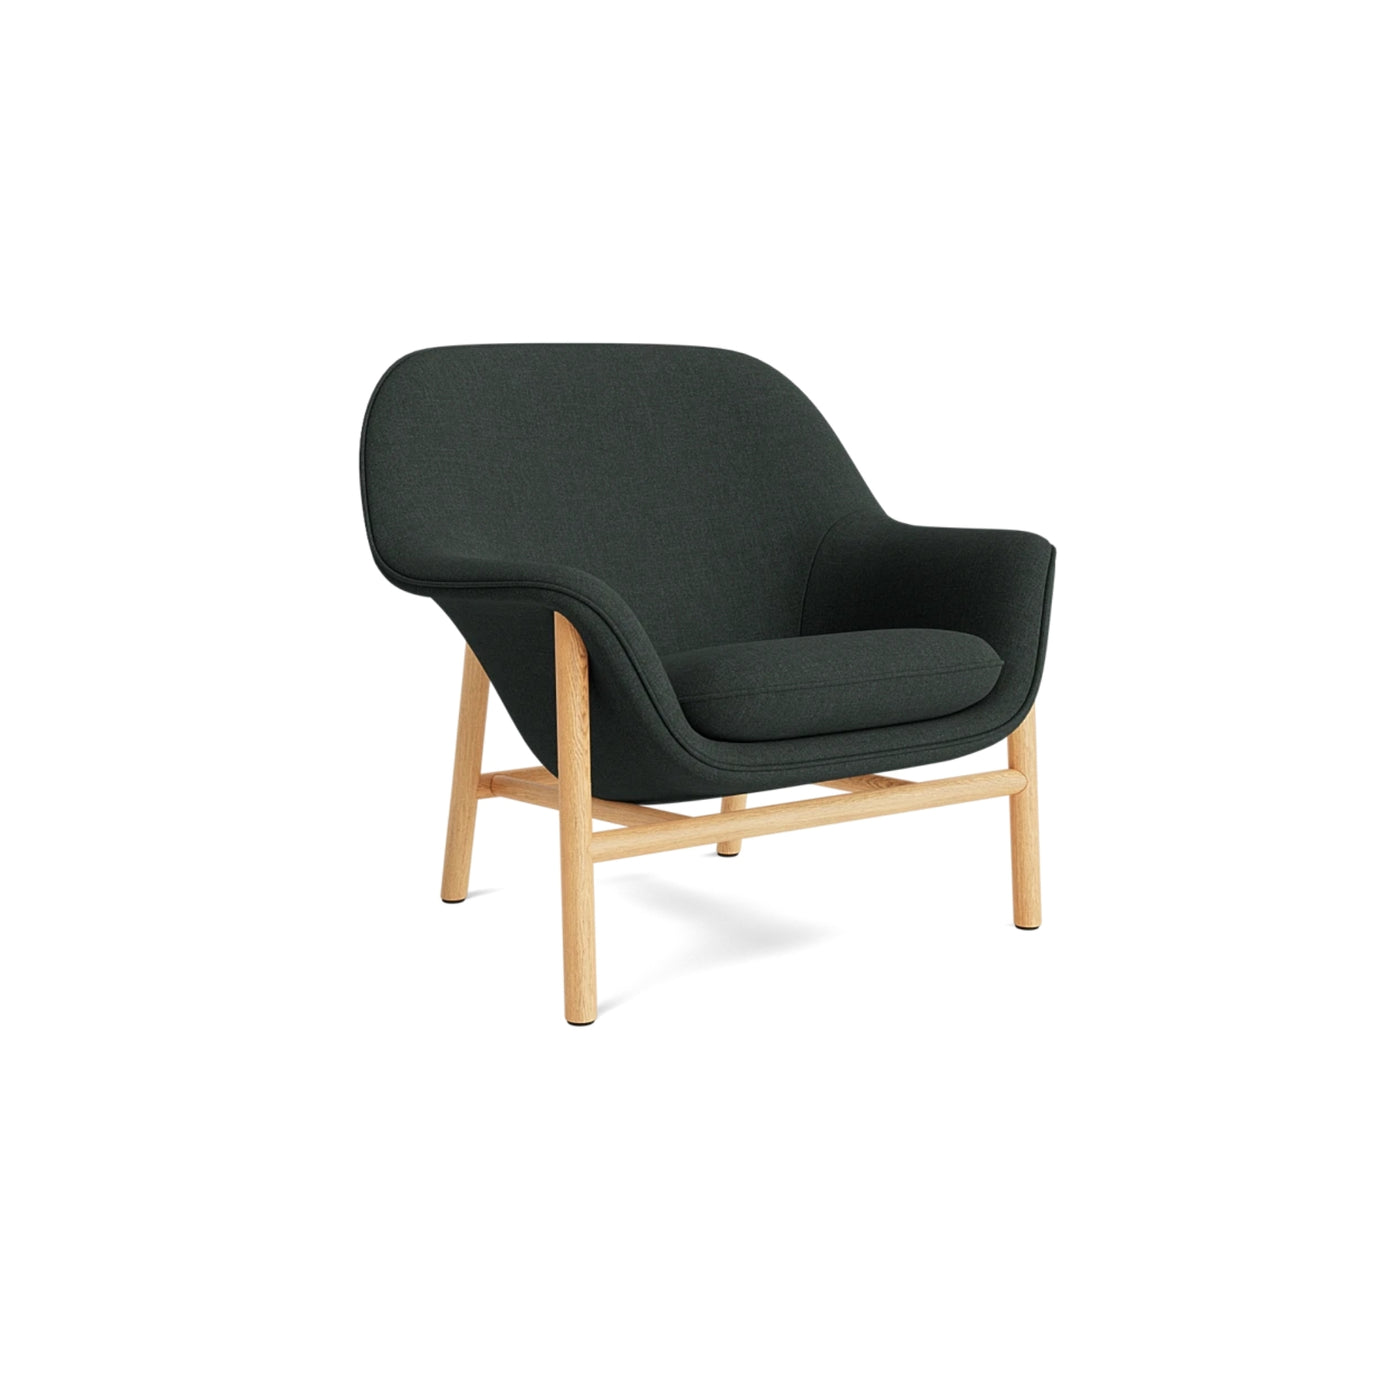 Normann Copenhagen Drape Lounge Chair at someday designs. #colour_remix-973